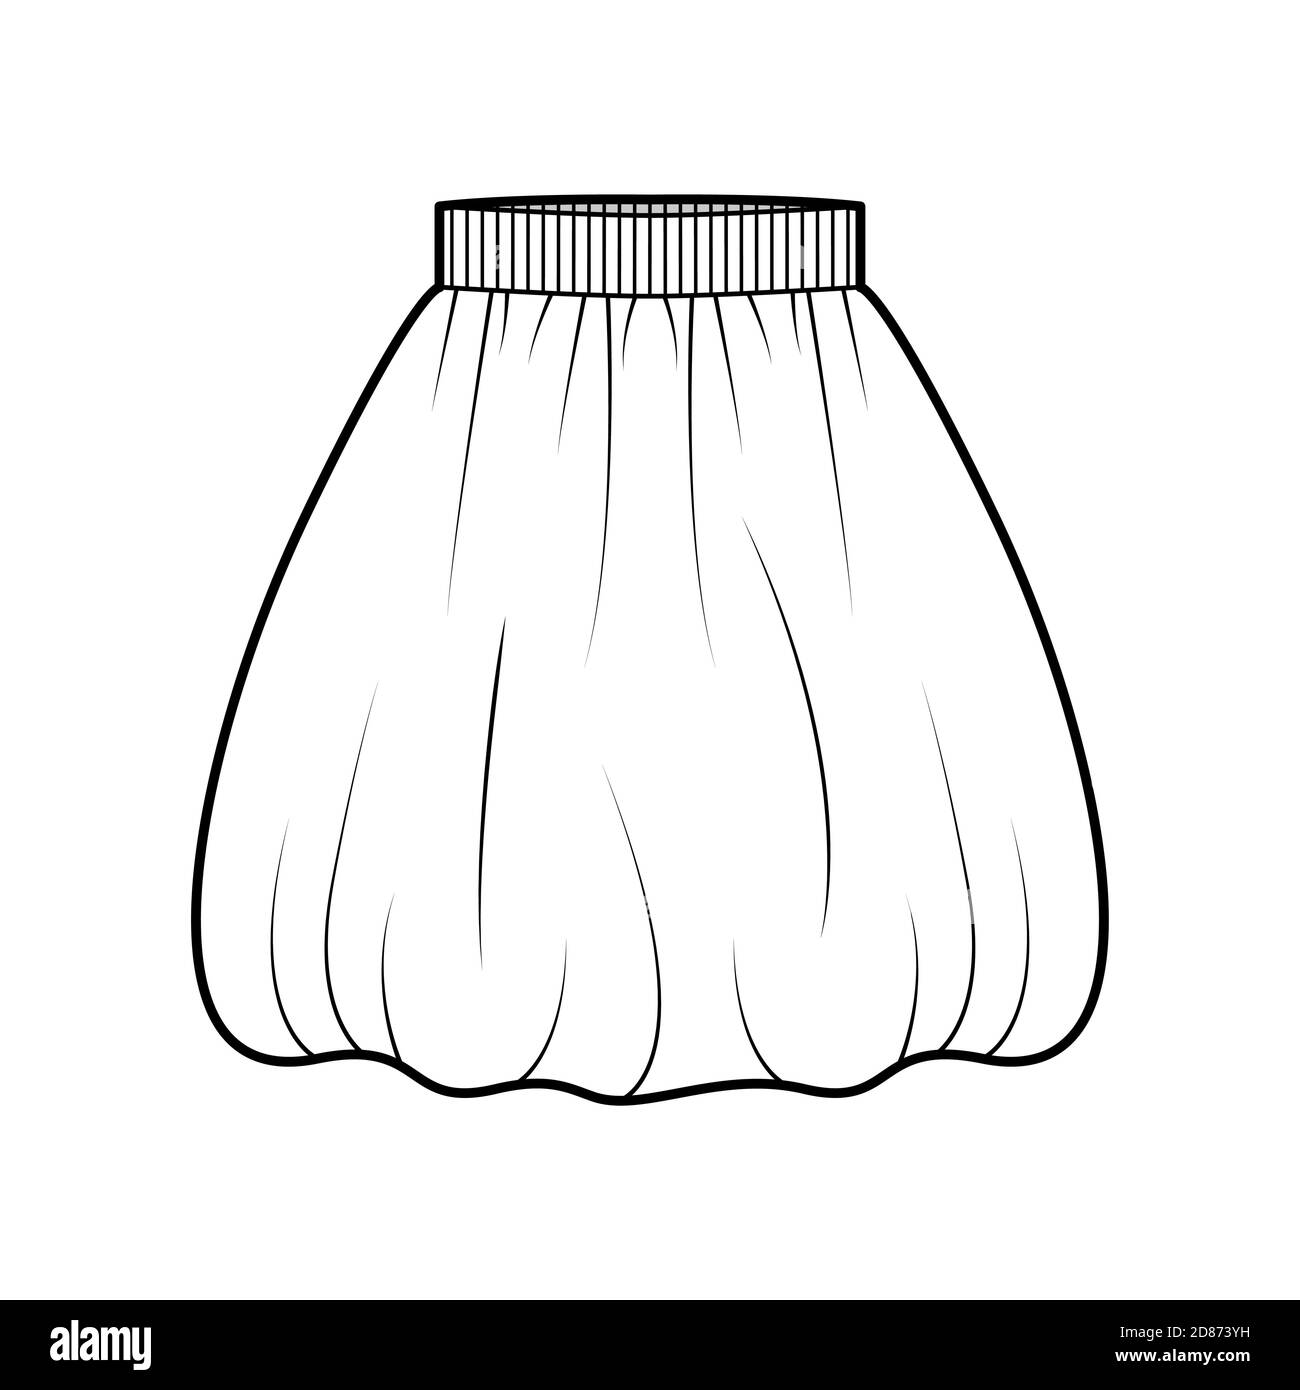 Skirt balloon technical fashion illustration  Stock Illustration  73183704  PIXTA